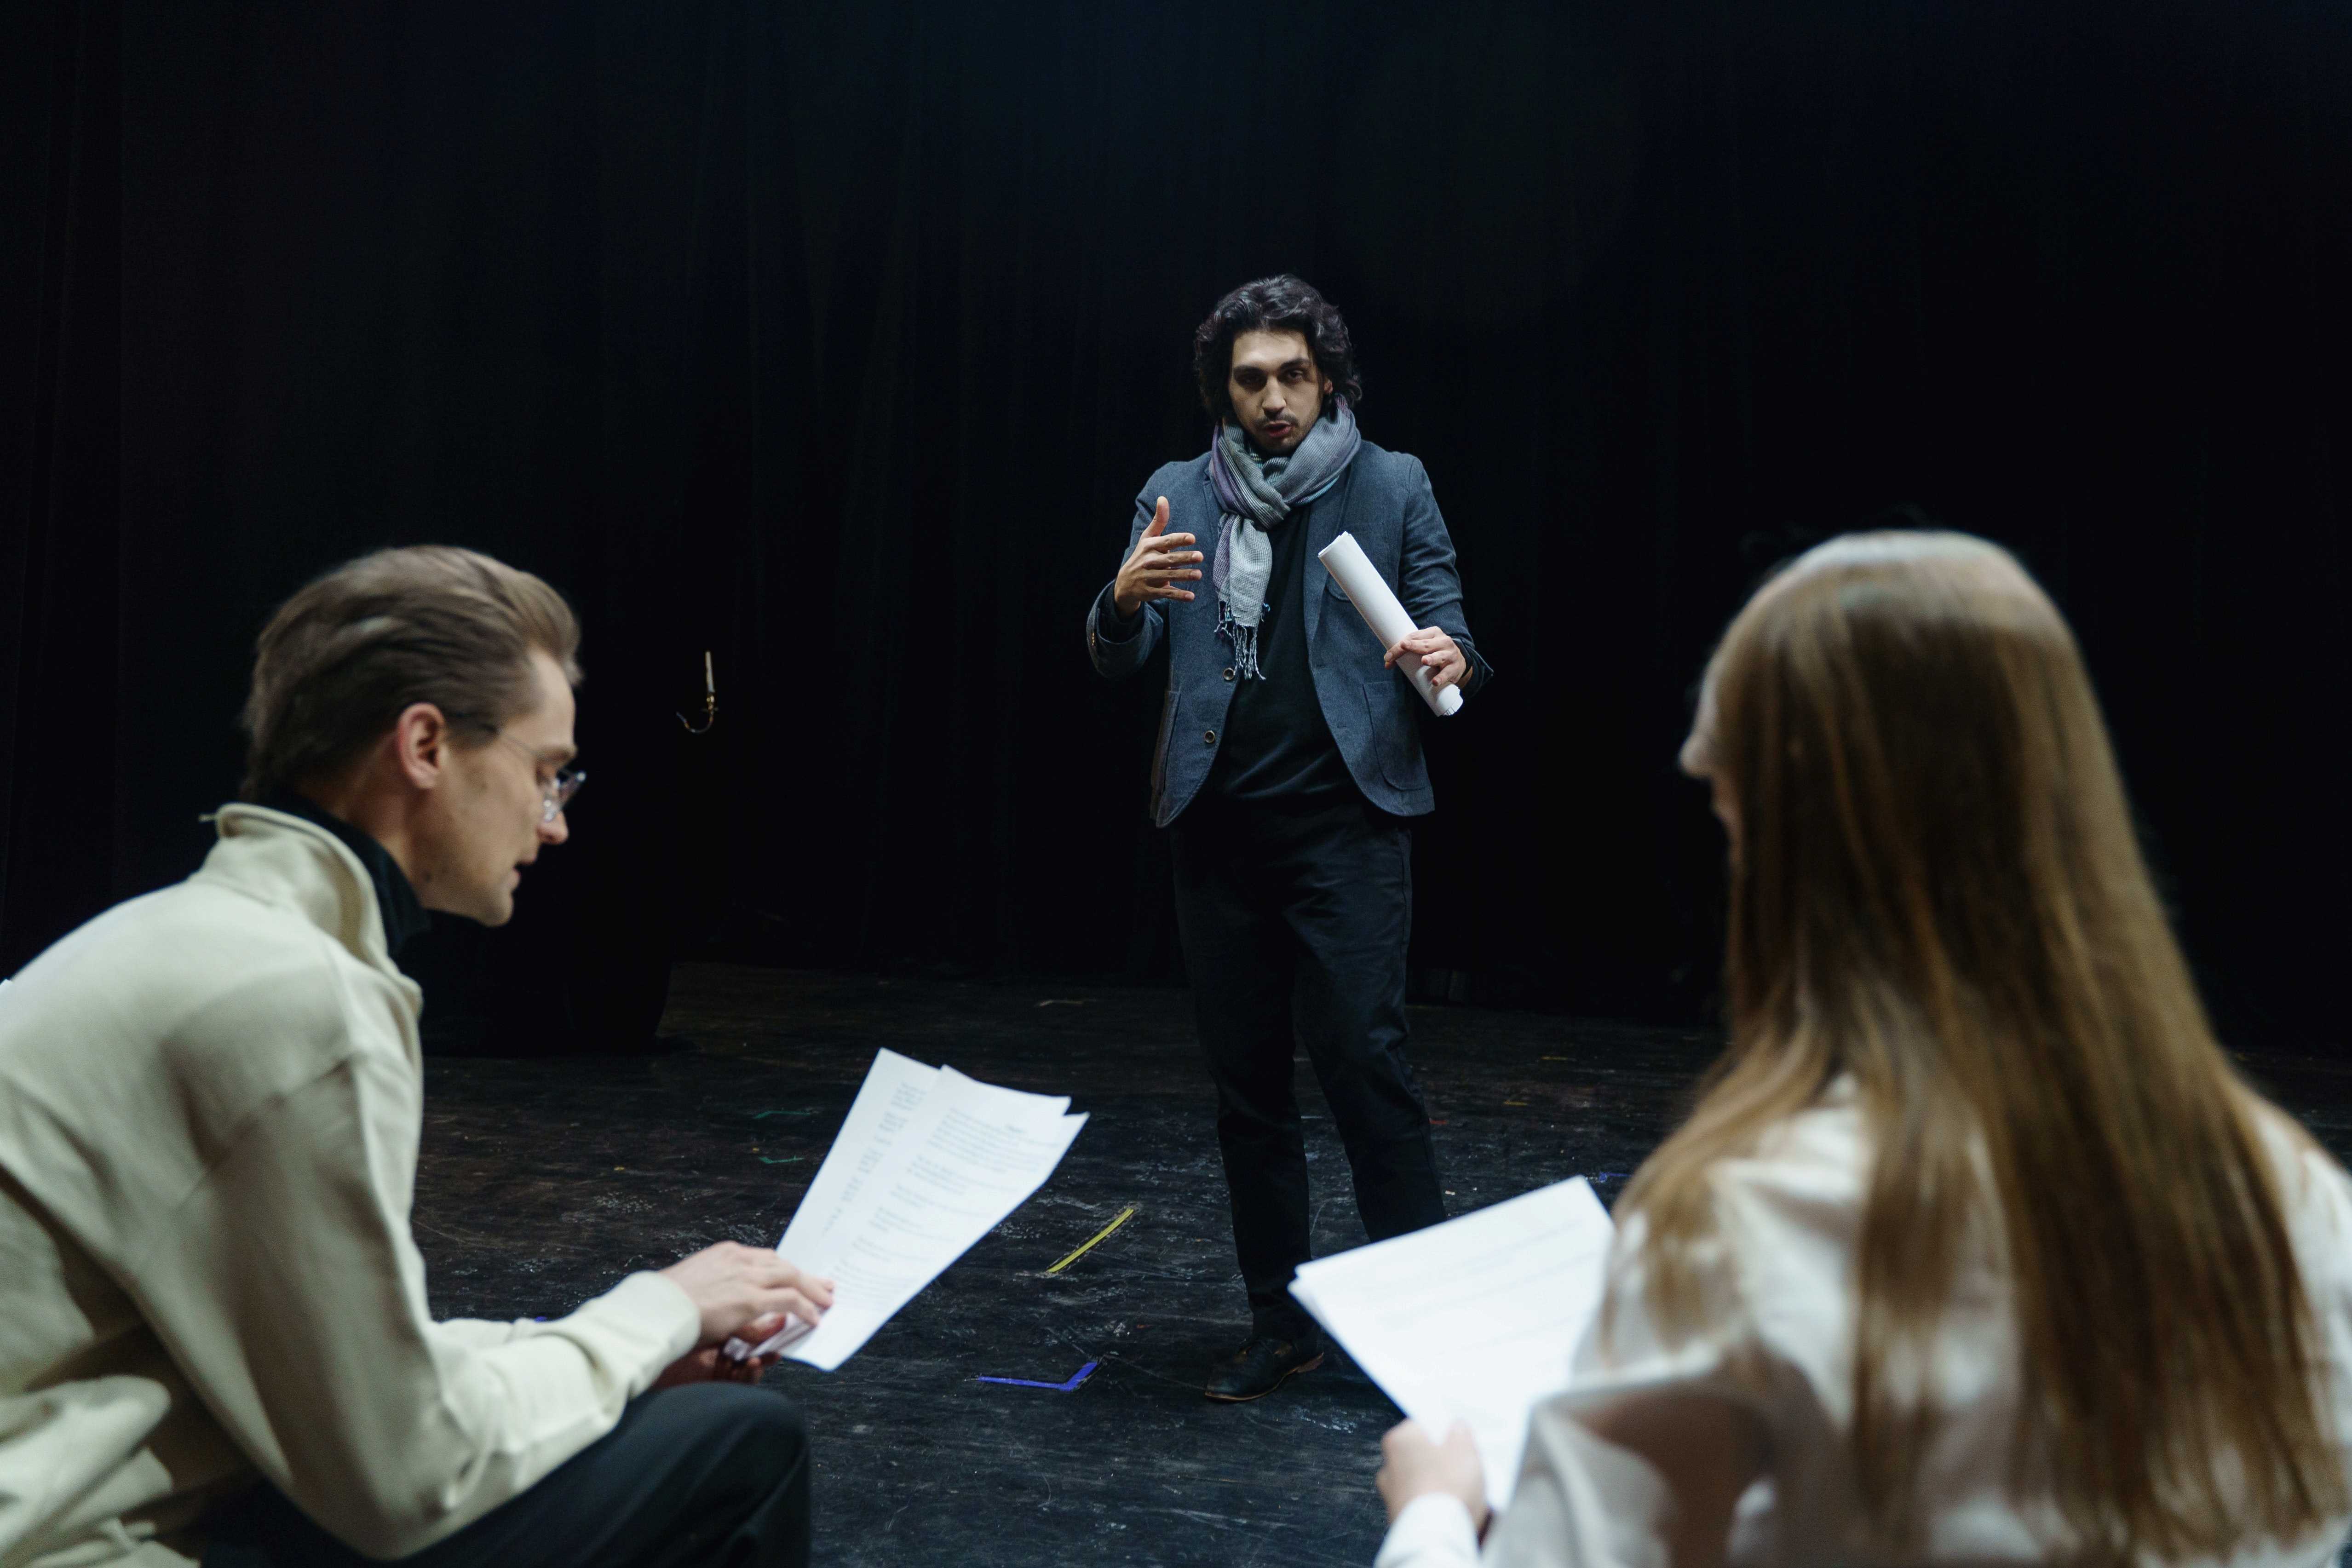 La imagen muestra unos actores sosteniendo un guion durante un ensayo.